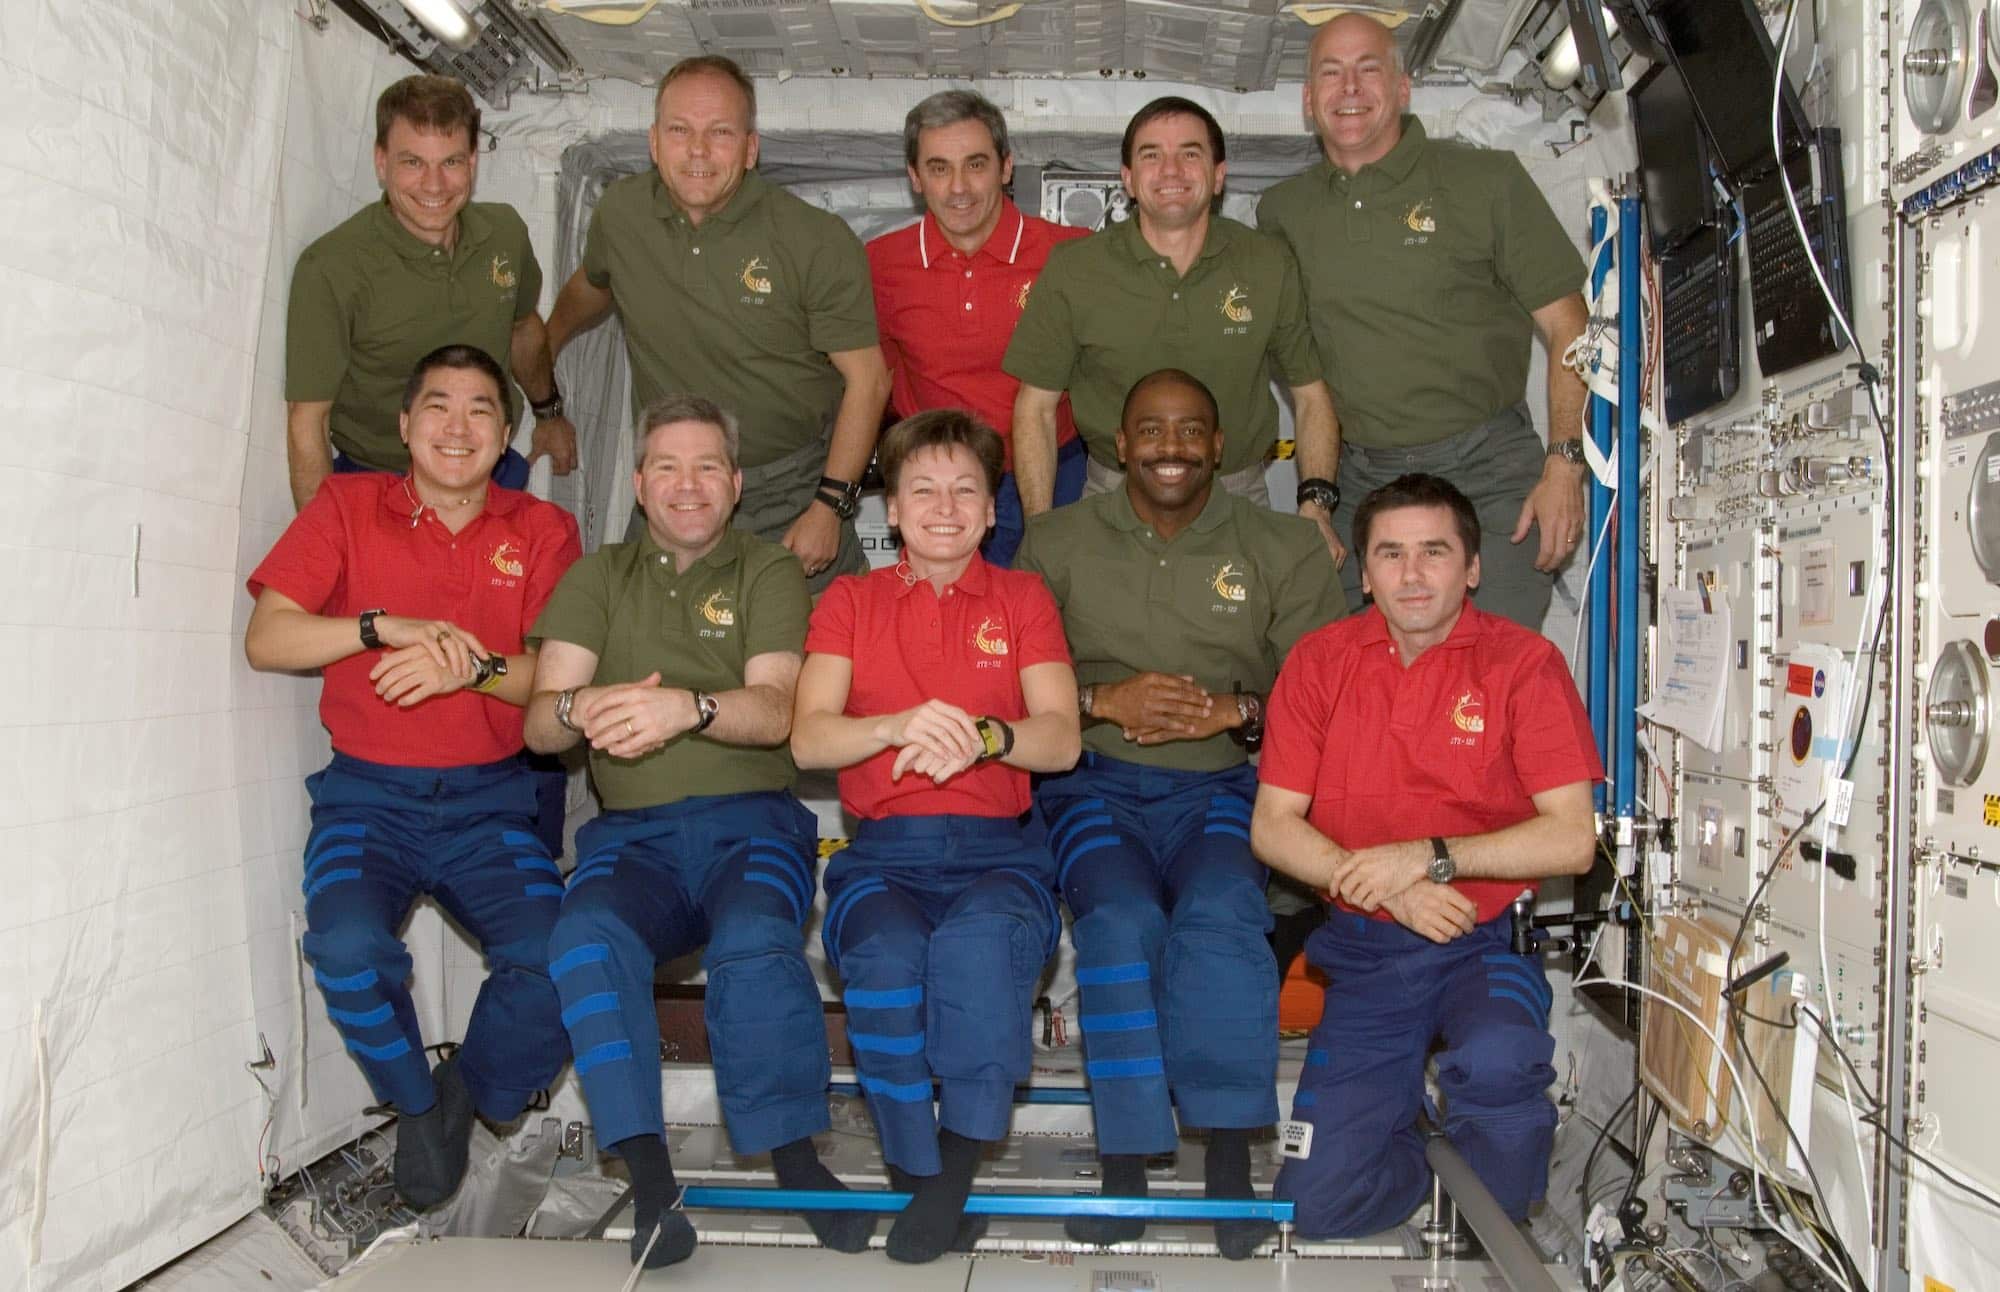 Les équipages de l’ISS et de la navette réunis dans le module européen Columbus. En haut, deuxième à partir de la gauche : Hans Schlegel avec Léopold Eyharts en rouge à côté. Crédit : NASA